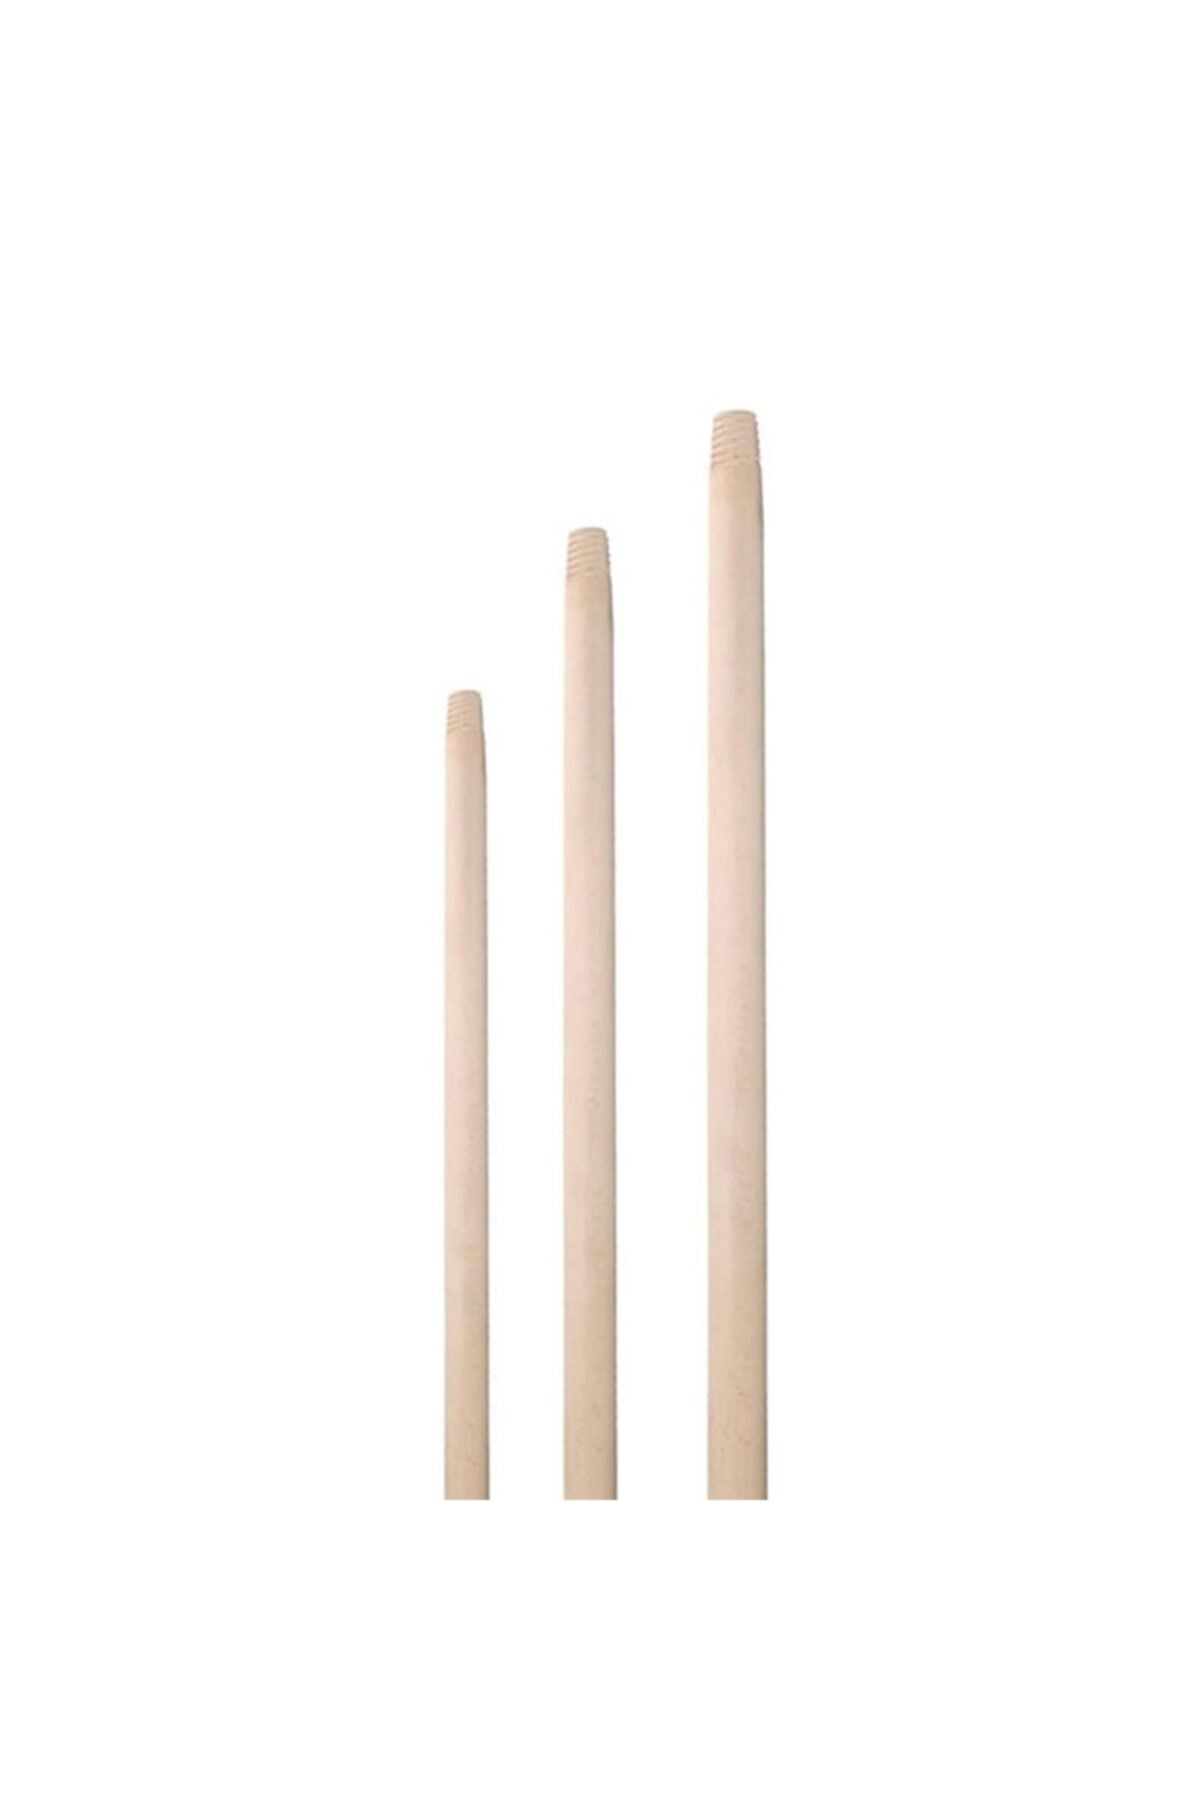 Master Gürgen Ağaç Fırça Sapı 150cm- 1 Adet Fiyatı